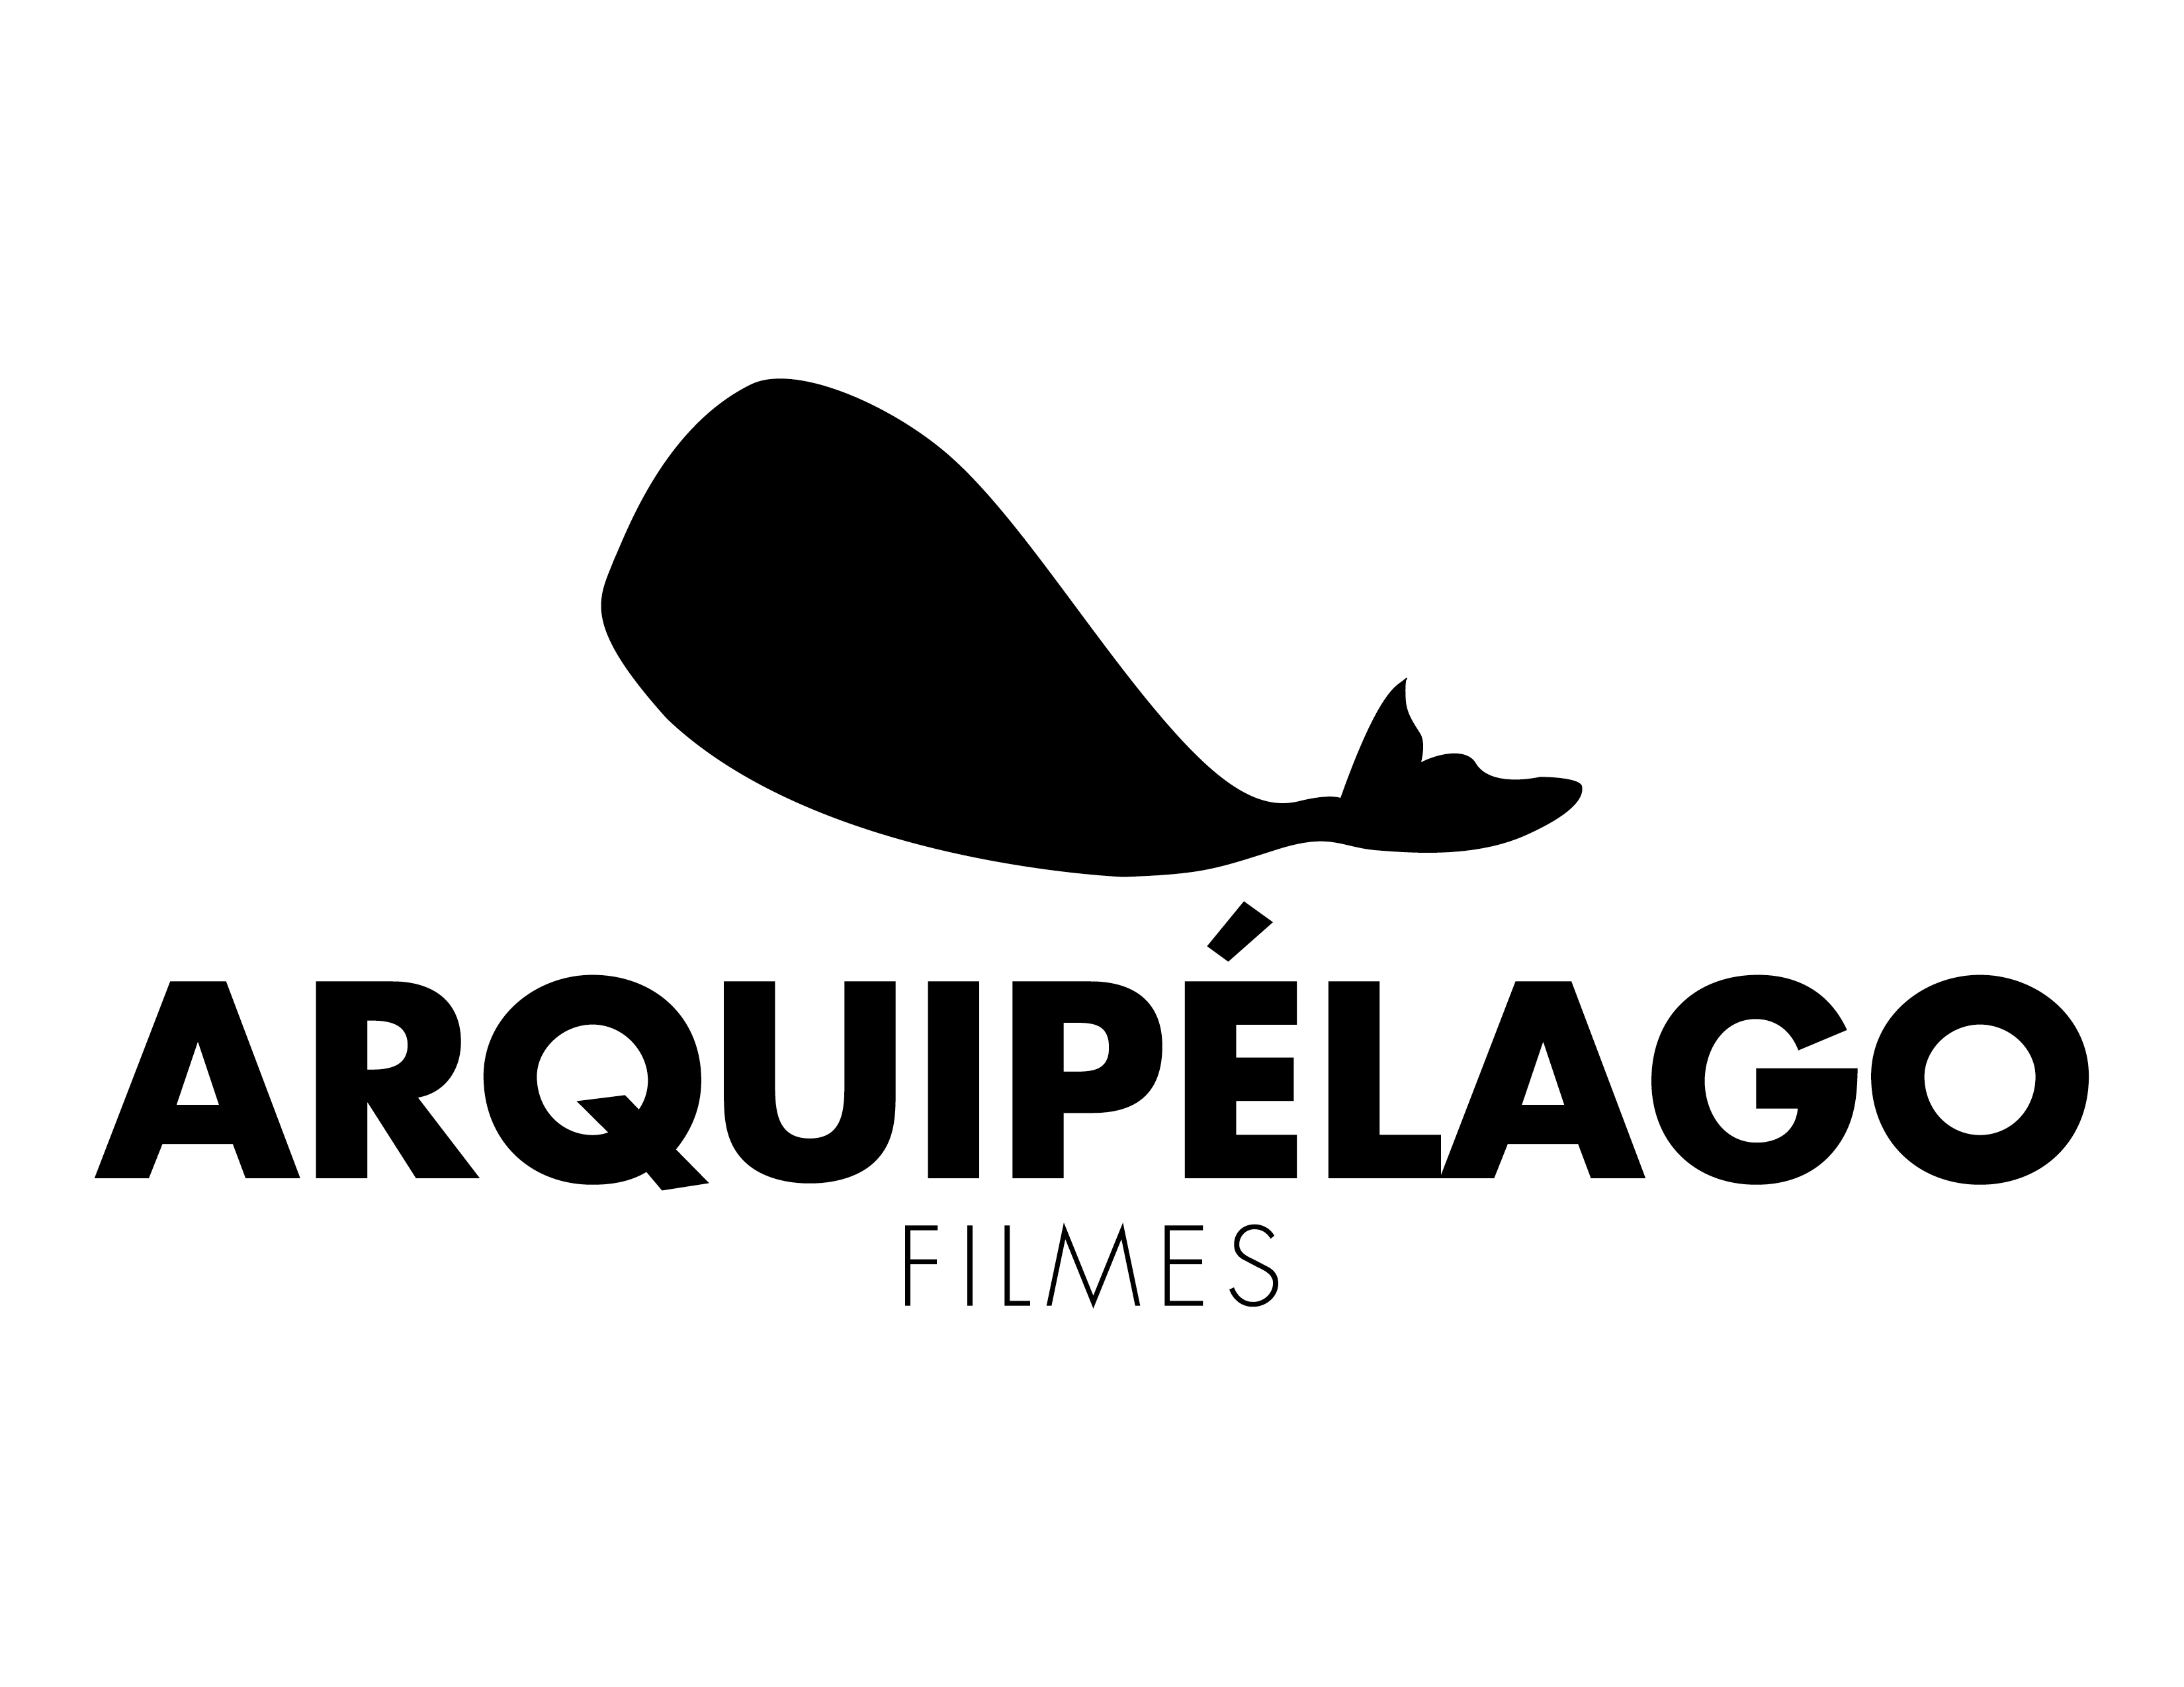 Arquipélago Filmes fundada em 2015